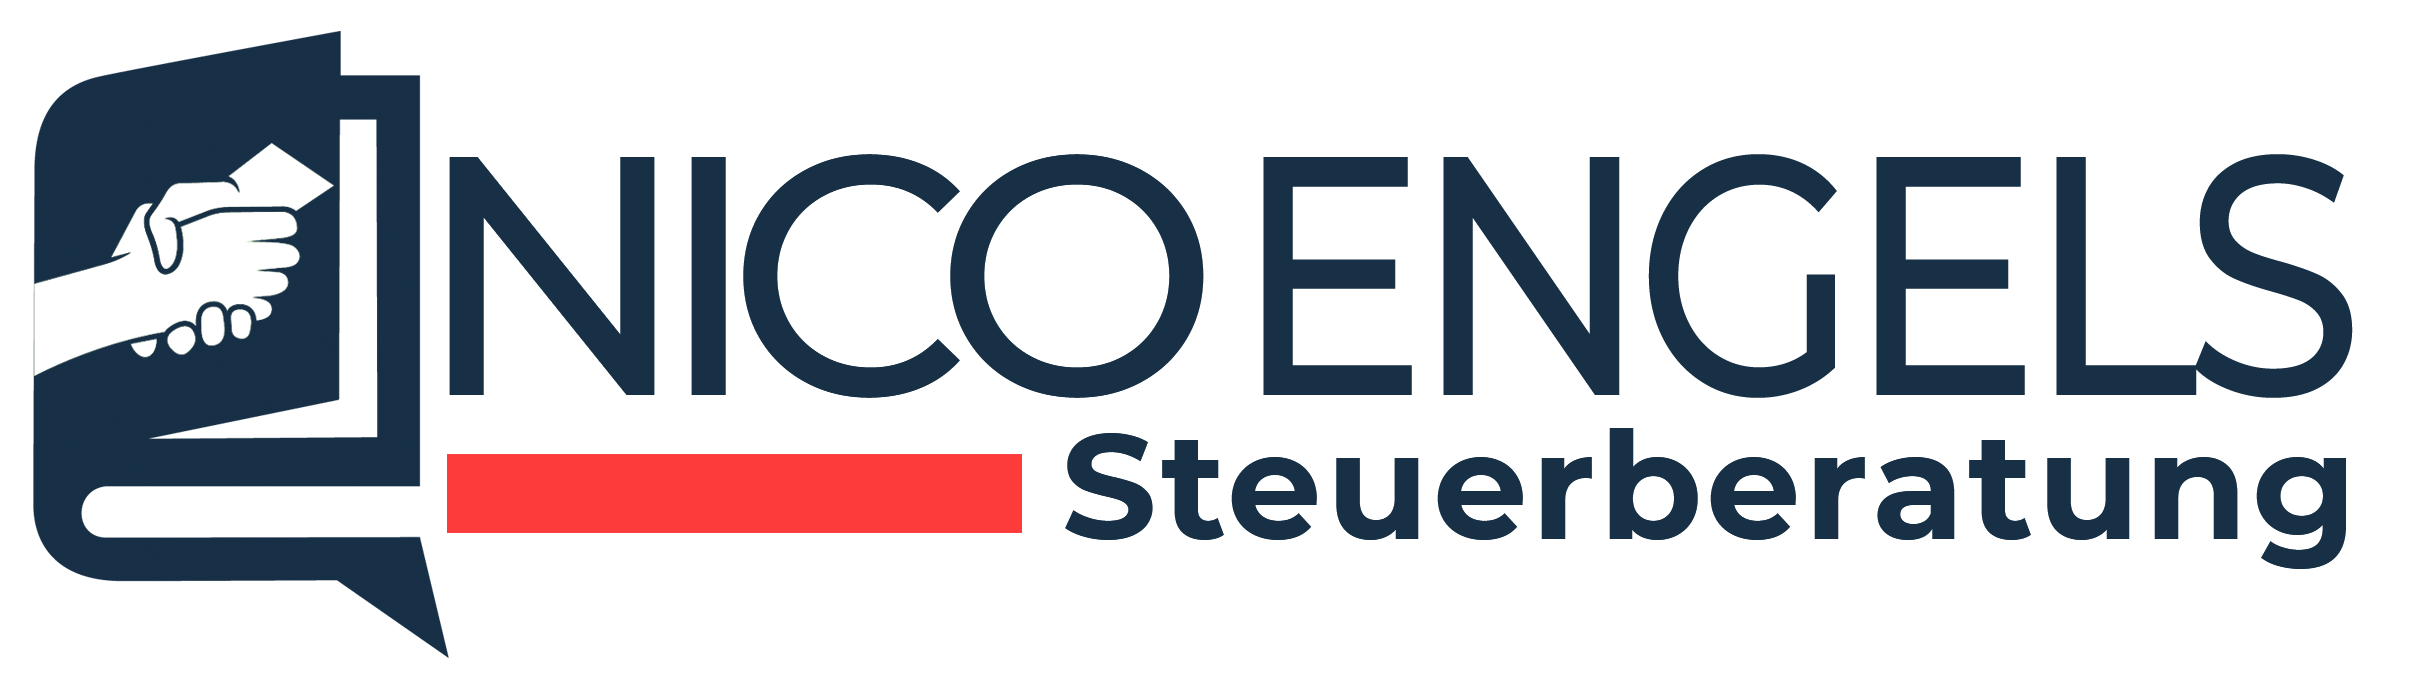 engels-steuerberater-gelsenkirchen-logo